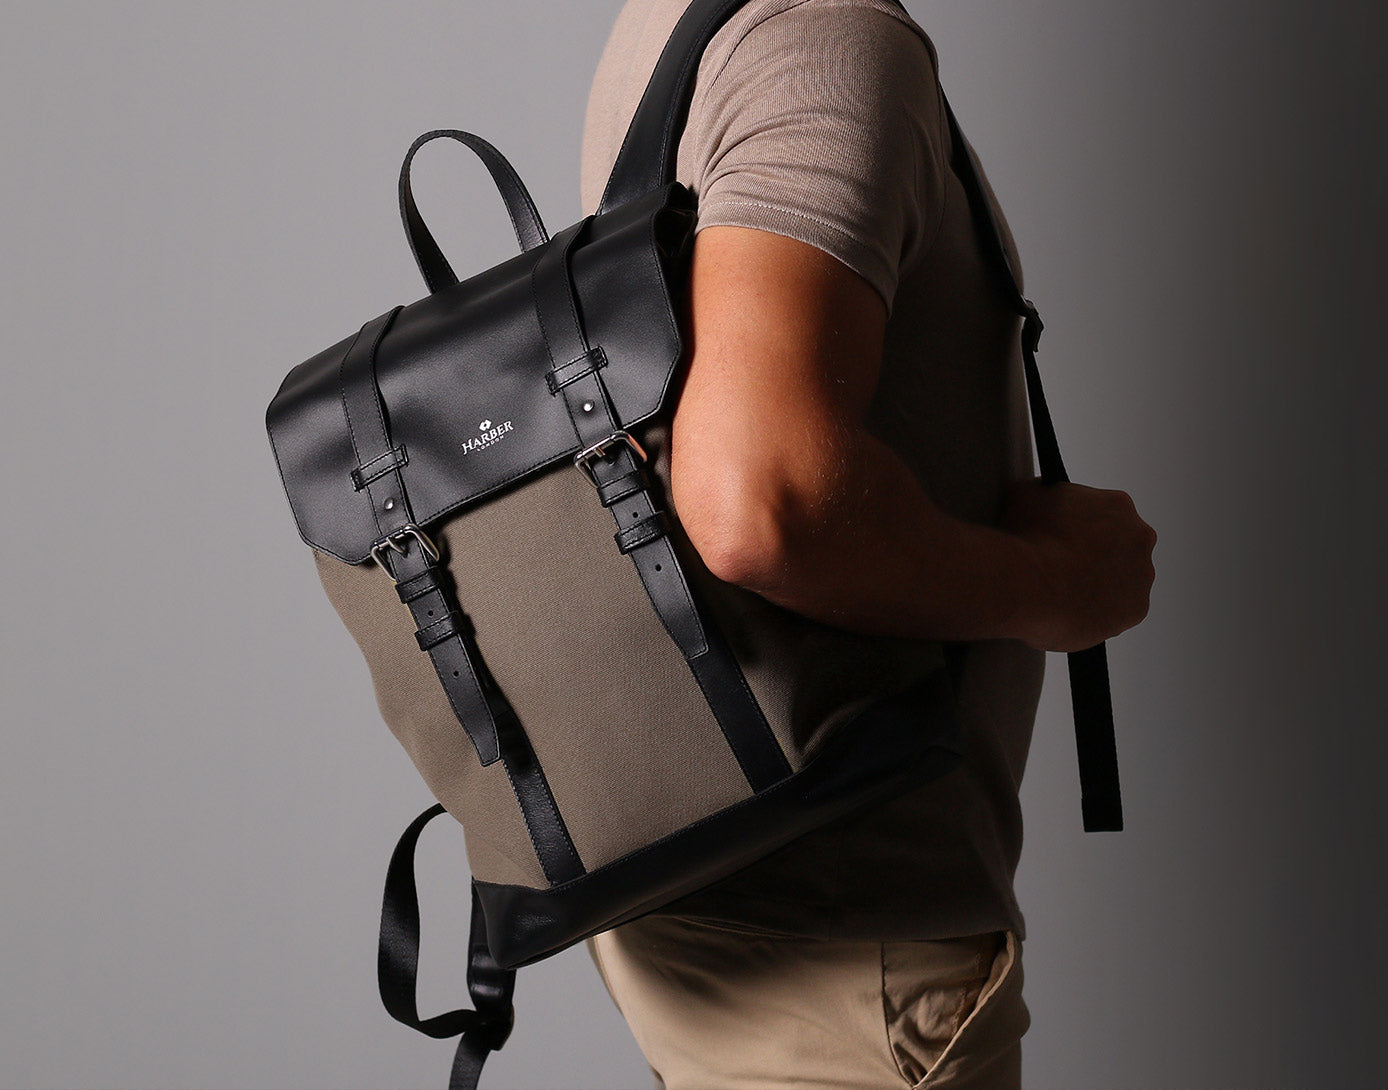 Luxury backpack